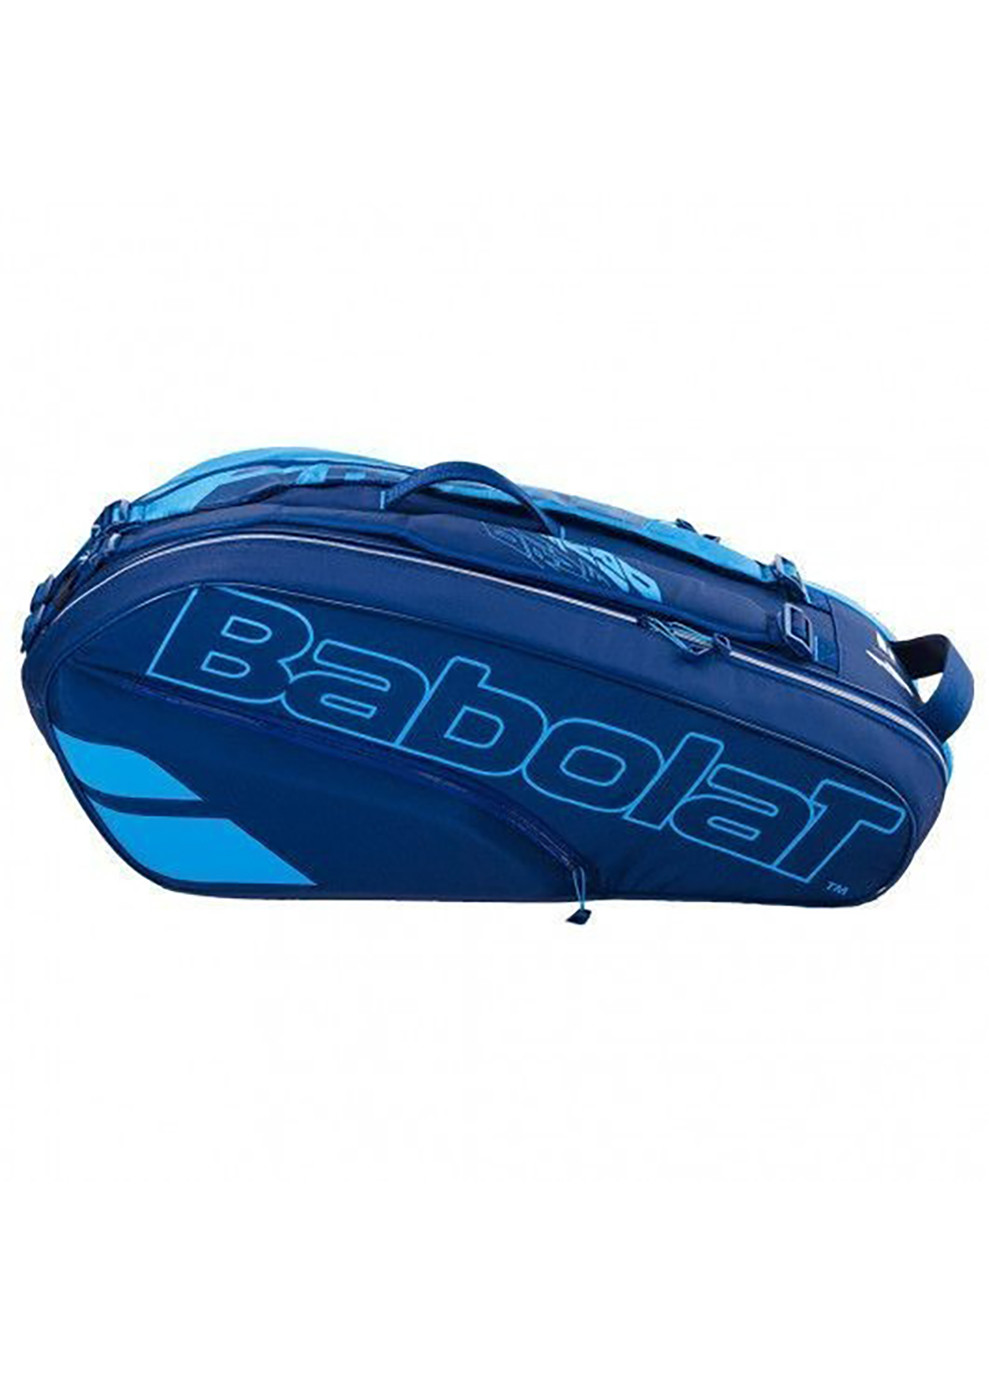 Чехол для теннисных ракеток RH X6 PURE DRIVE 6 ракеток Синий Babolat (258138145)